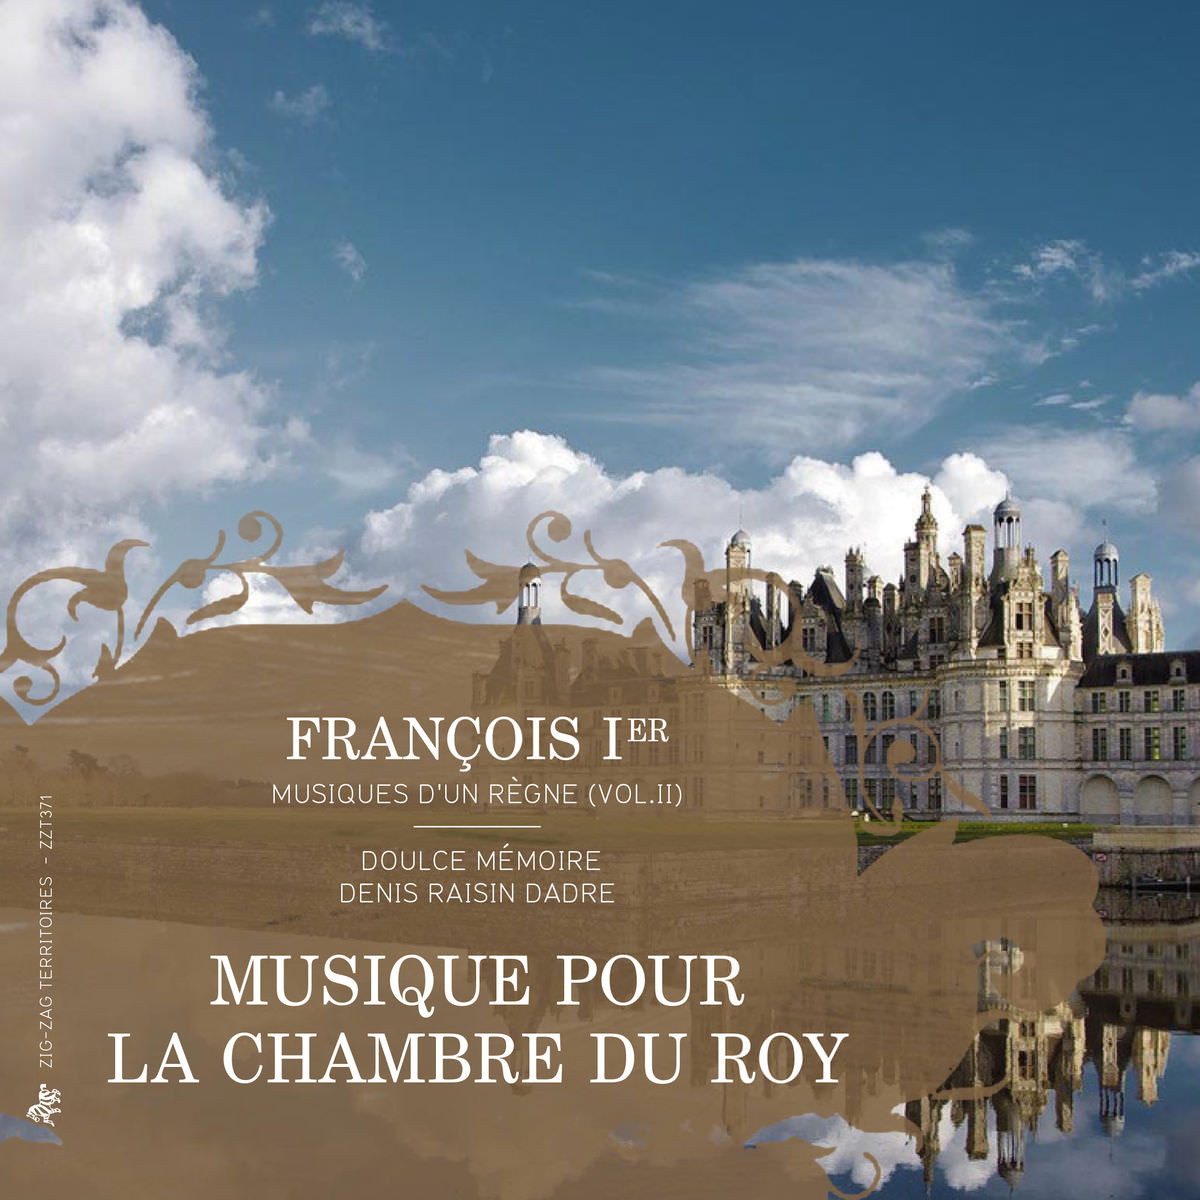 Denis Raisin Dadre & Doulce Memoire - François Ier, musiques d’un regne, Vol. 2: Musique pour la chambre du Roy (2015) [FLAC 24bit/88,2kHz]